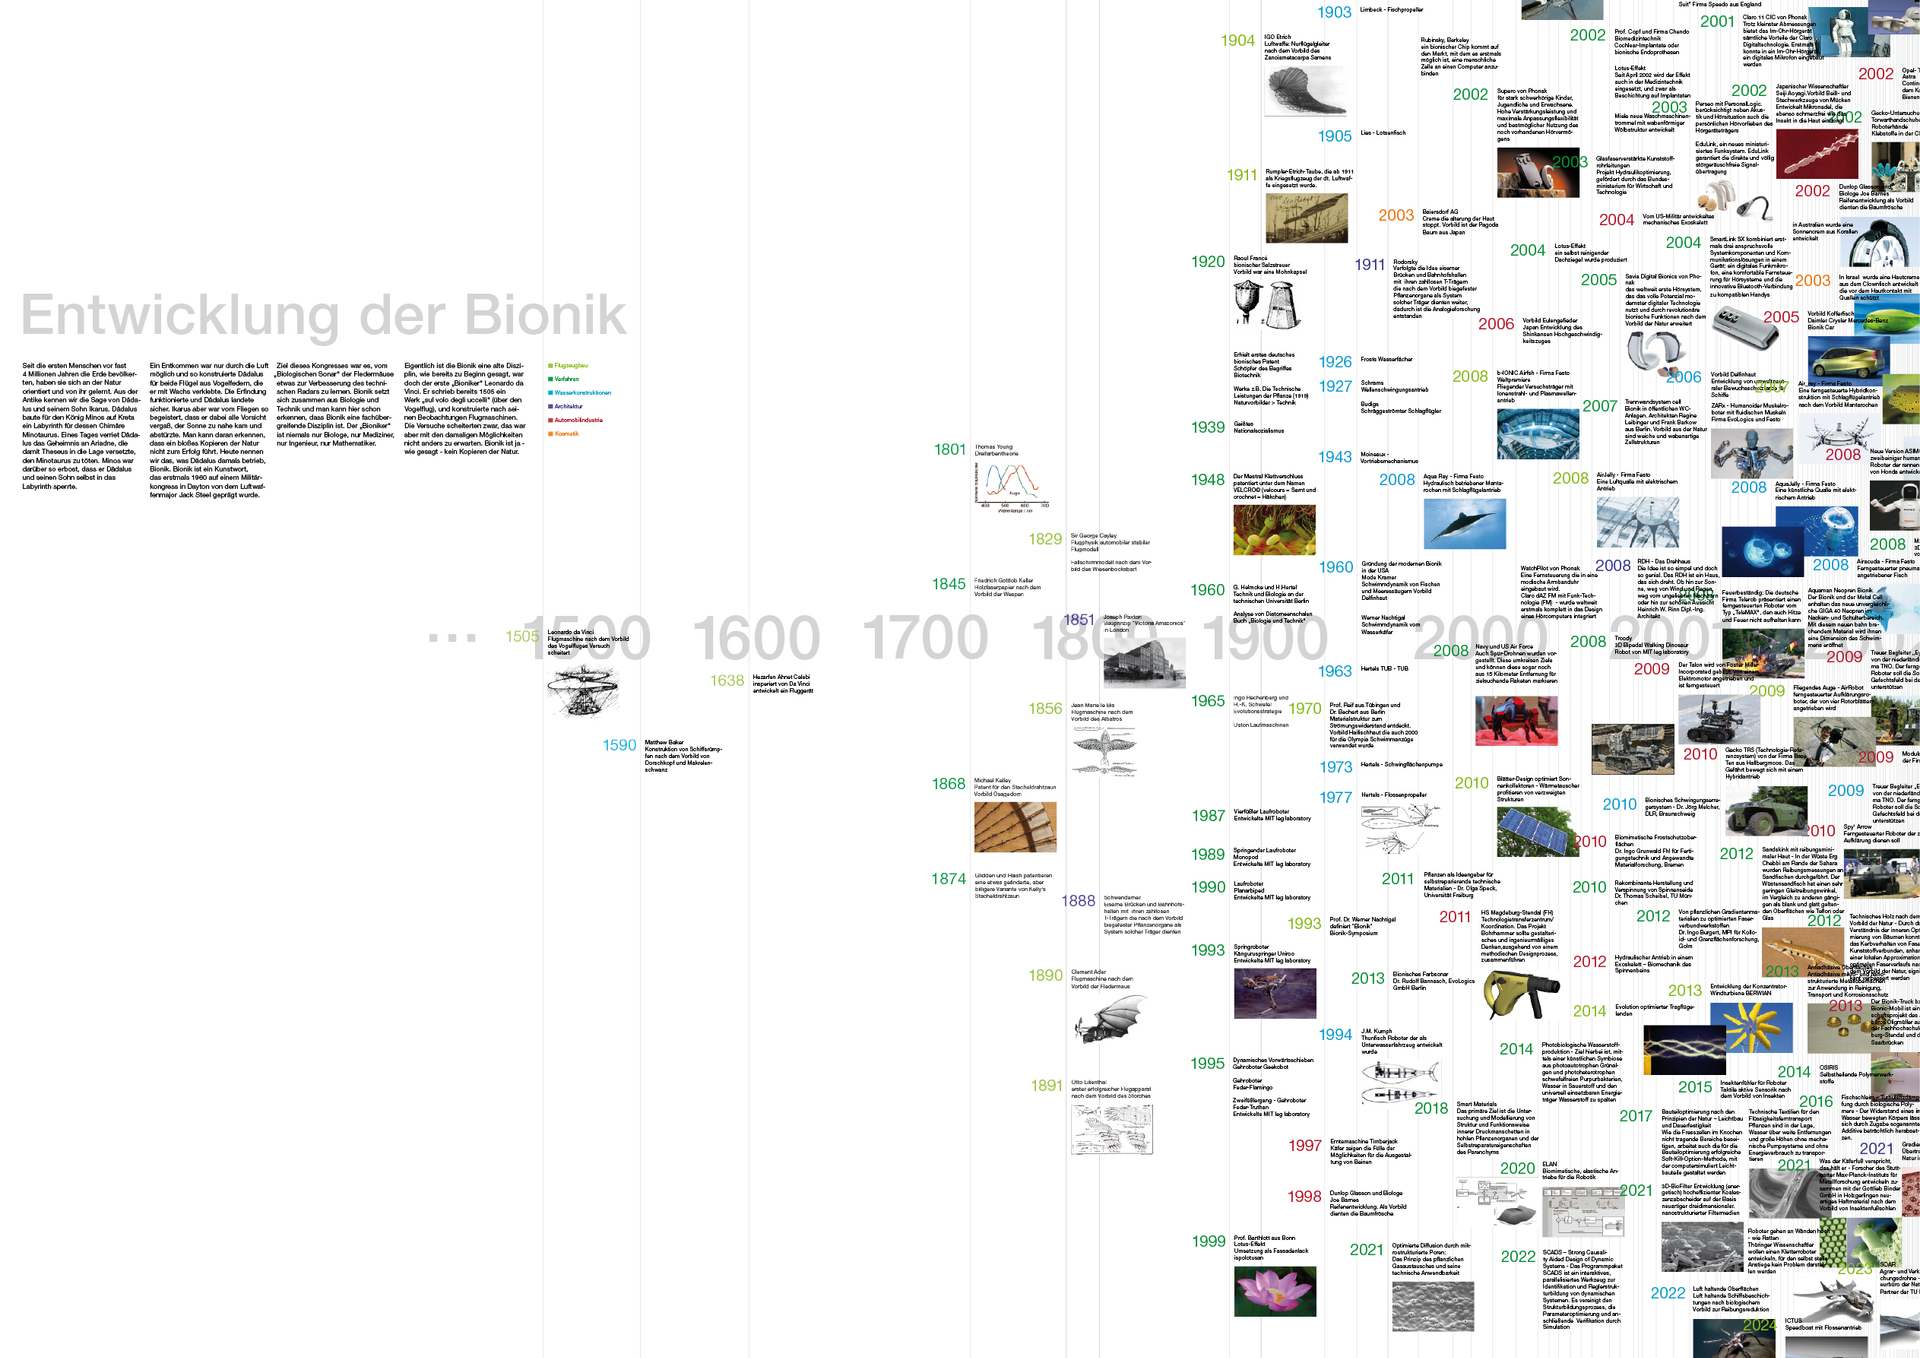 Großes Plakat zeigt die ganze History der Bionik in unzähligen Bildern und Daten – seit dem Jahr 1500 bis heute